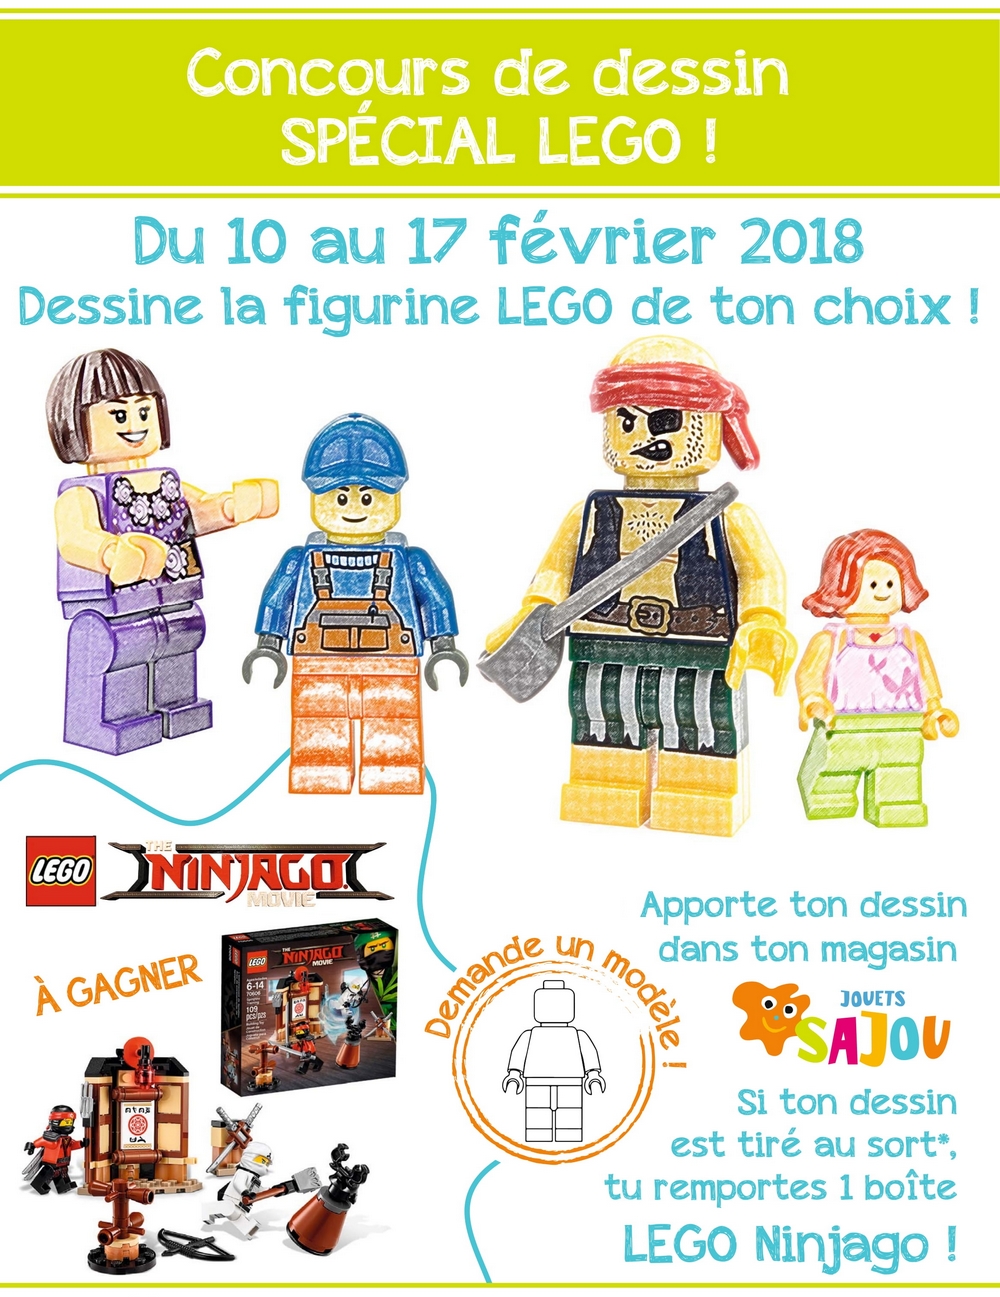 Concours dessin Lego Février 2018 Jouets SAJOU